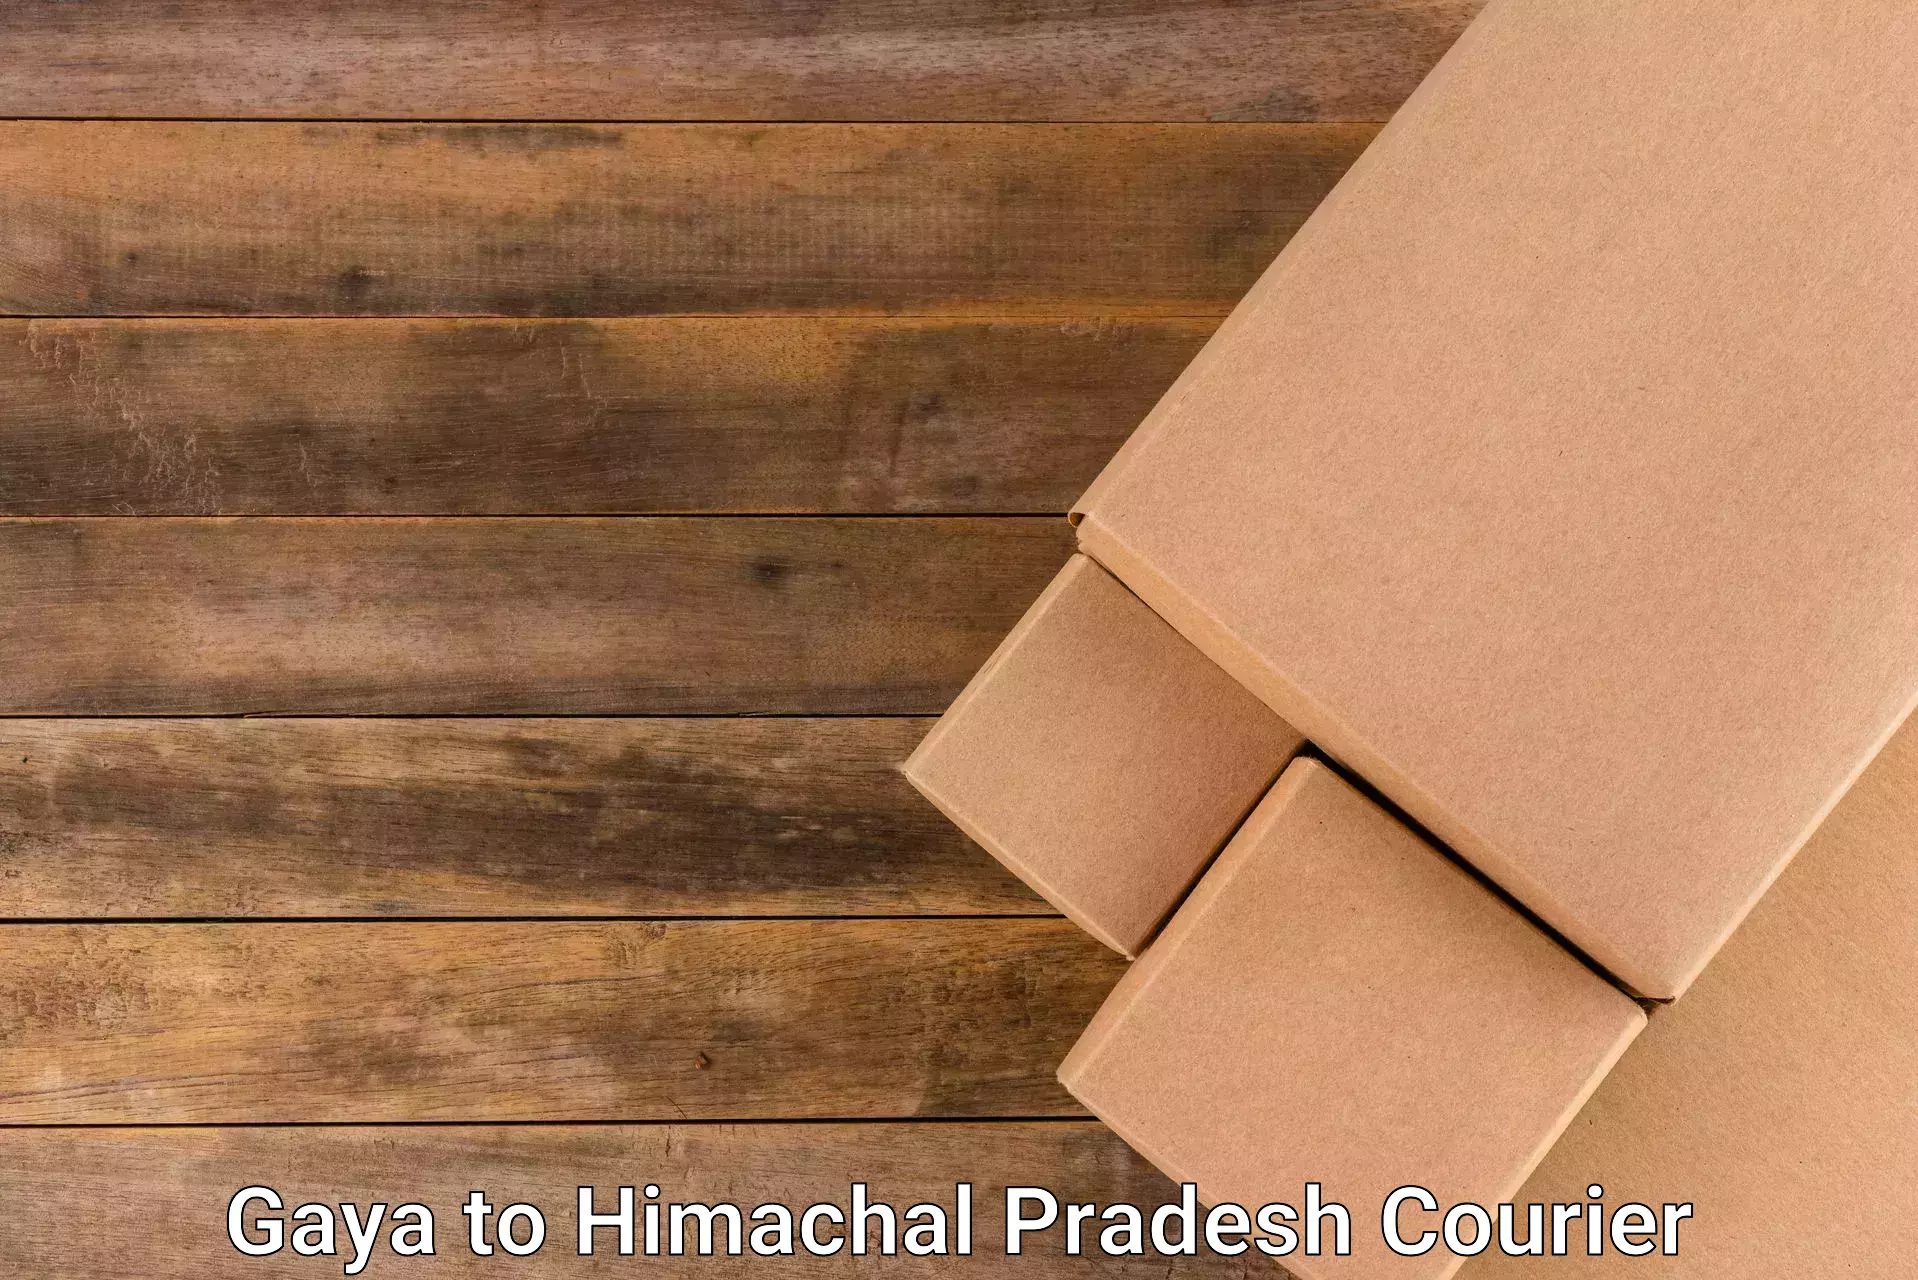 Nationwide parcel services Gaya to Una Himachal Pradesh